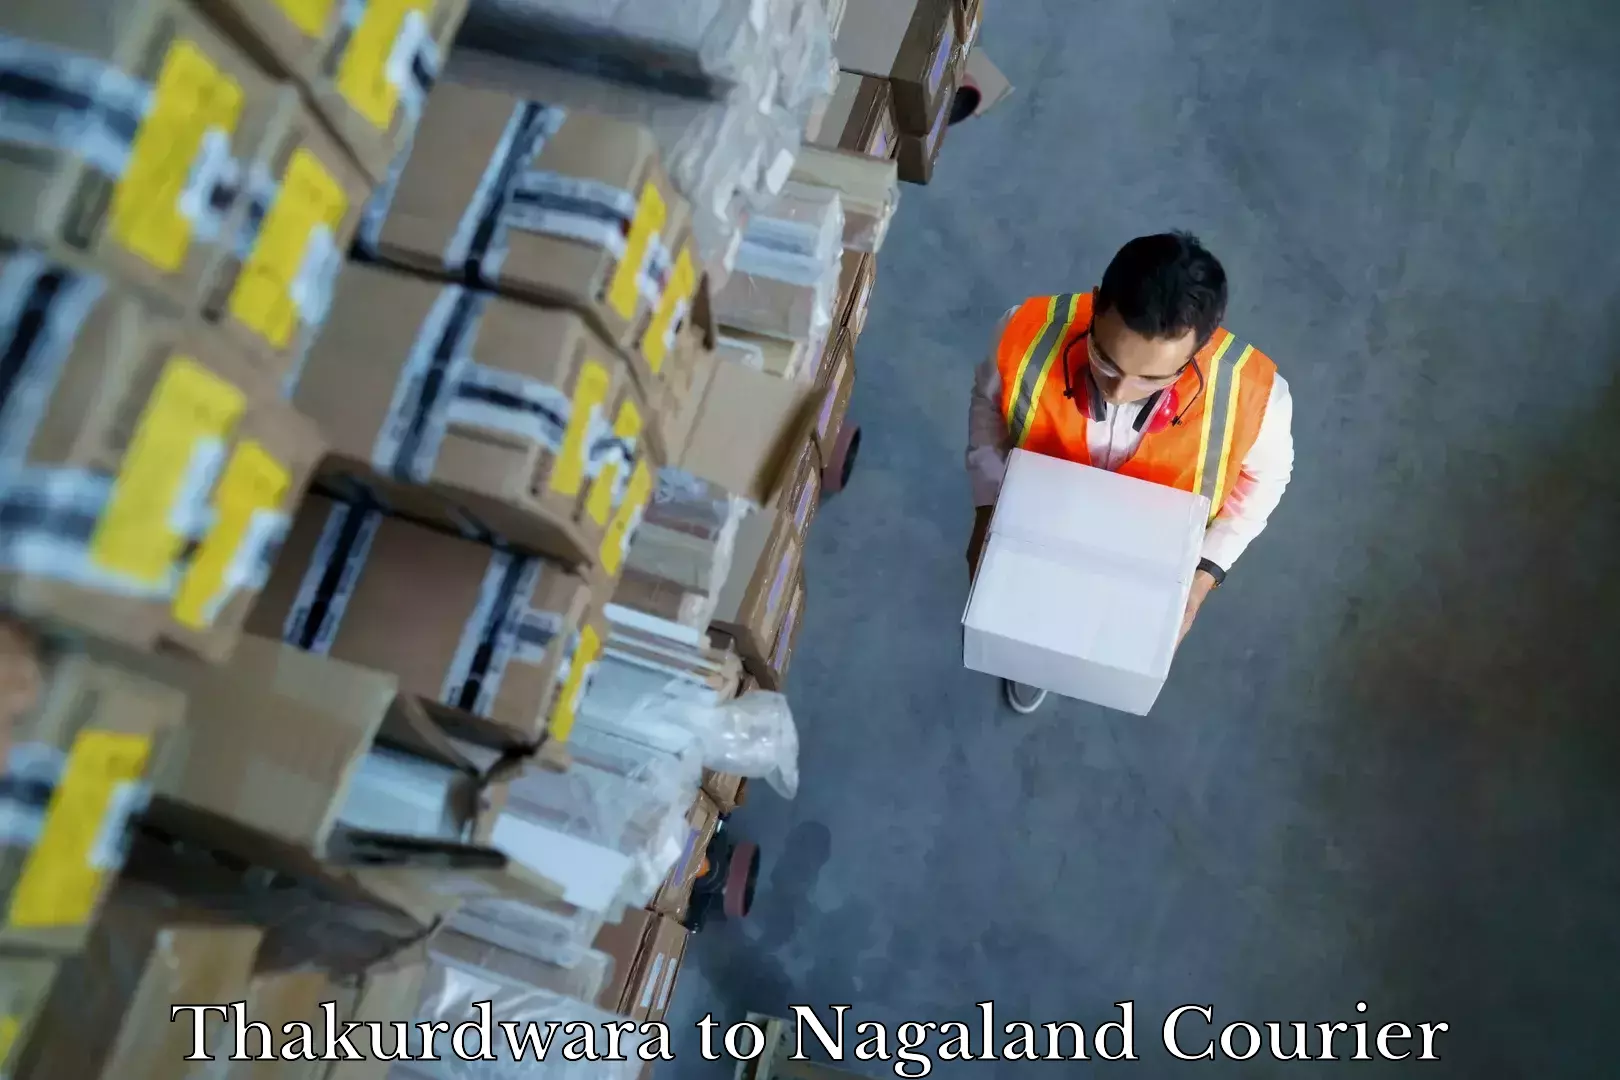 Furniture moving experts Thakurdwara to NIT Nagaland